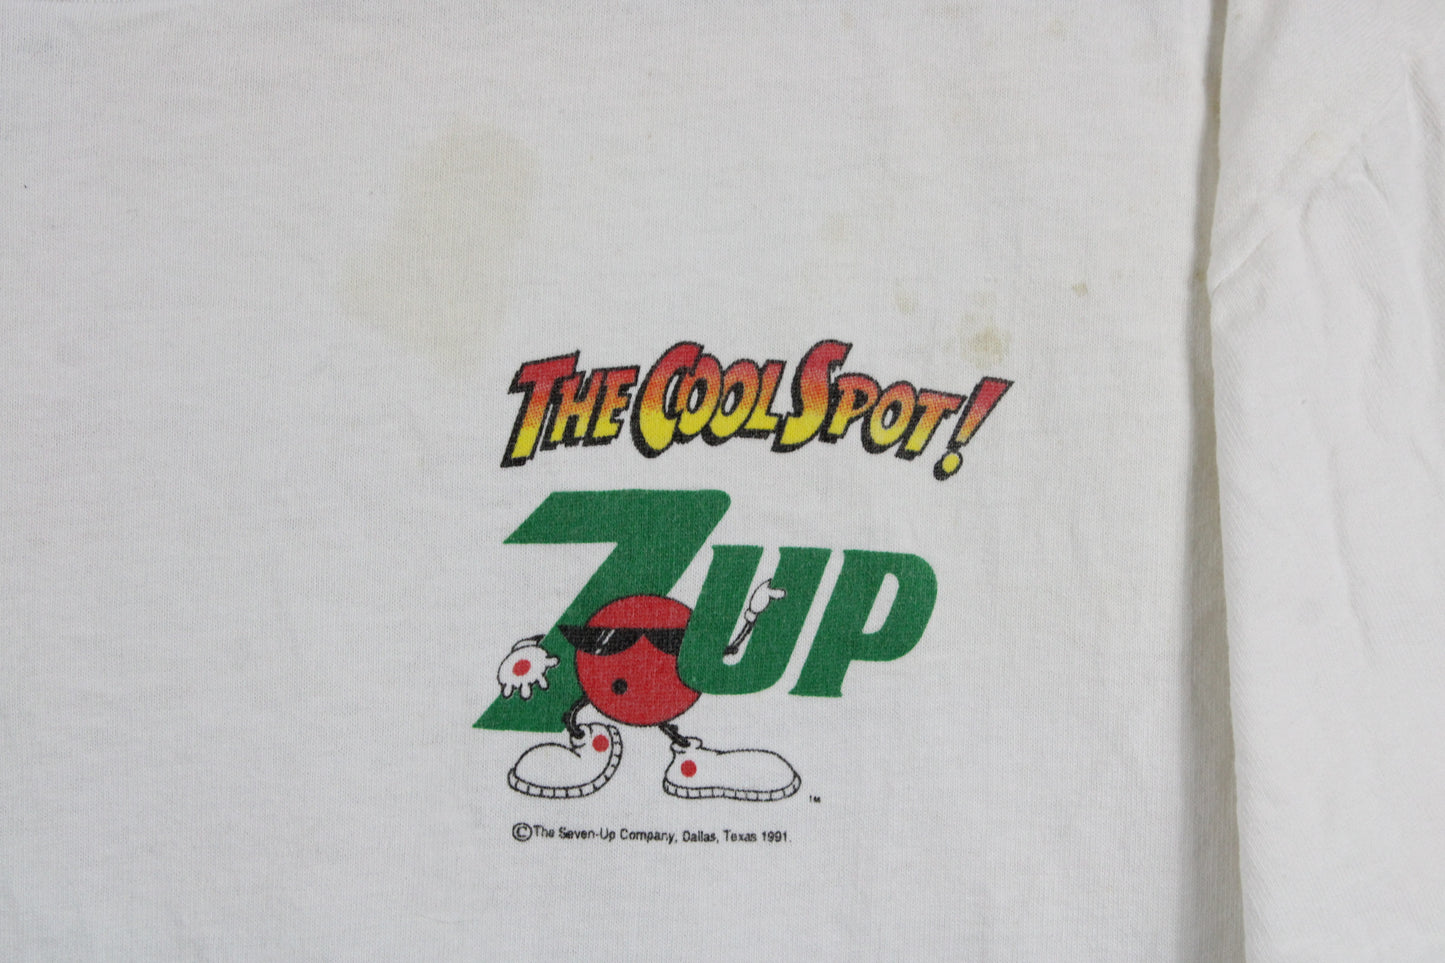 7Up "The Cool Spot!" T-Shirt